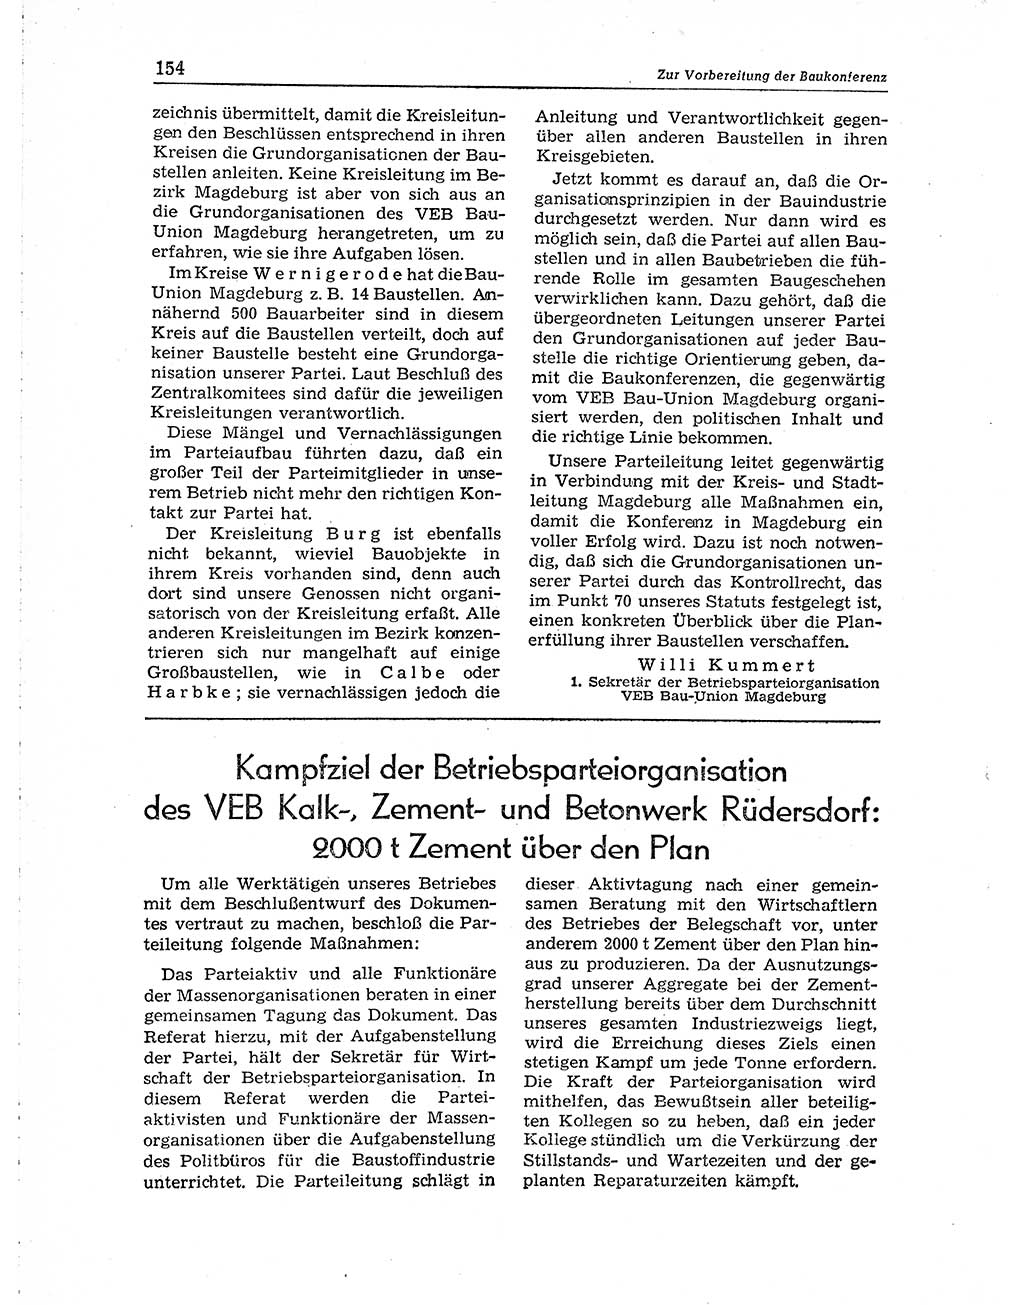 Neuer Weg (NW), Organ des Zentralkomitees (ZK) der SED (Sozialistische Einheitspartei Deutschlands) für Fragen des Parteiaufbaus und des Parteilebens, 10. Jahrgang [Deutsche Demokratische Republik (DDR)] 1955, Seite 154 (NW ZK SED DDR 1955, S. 154)